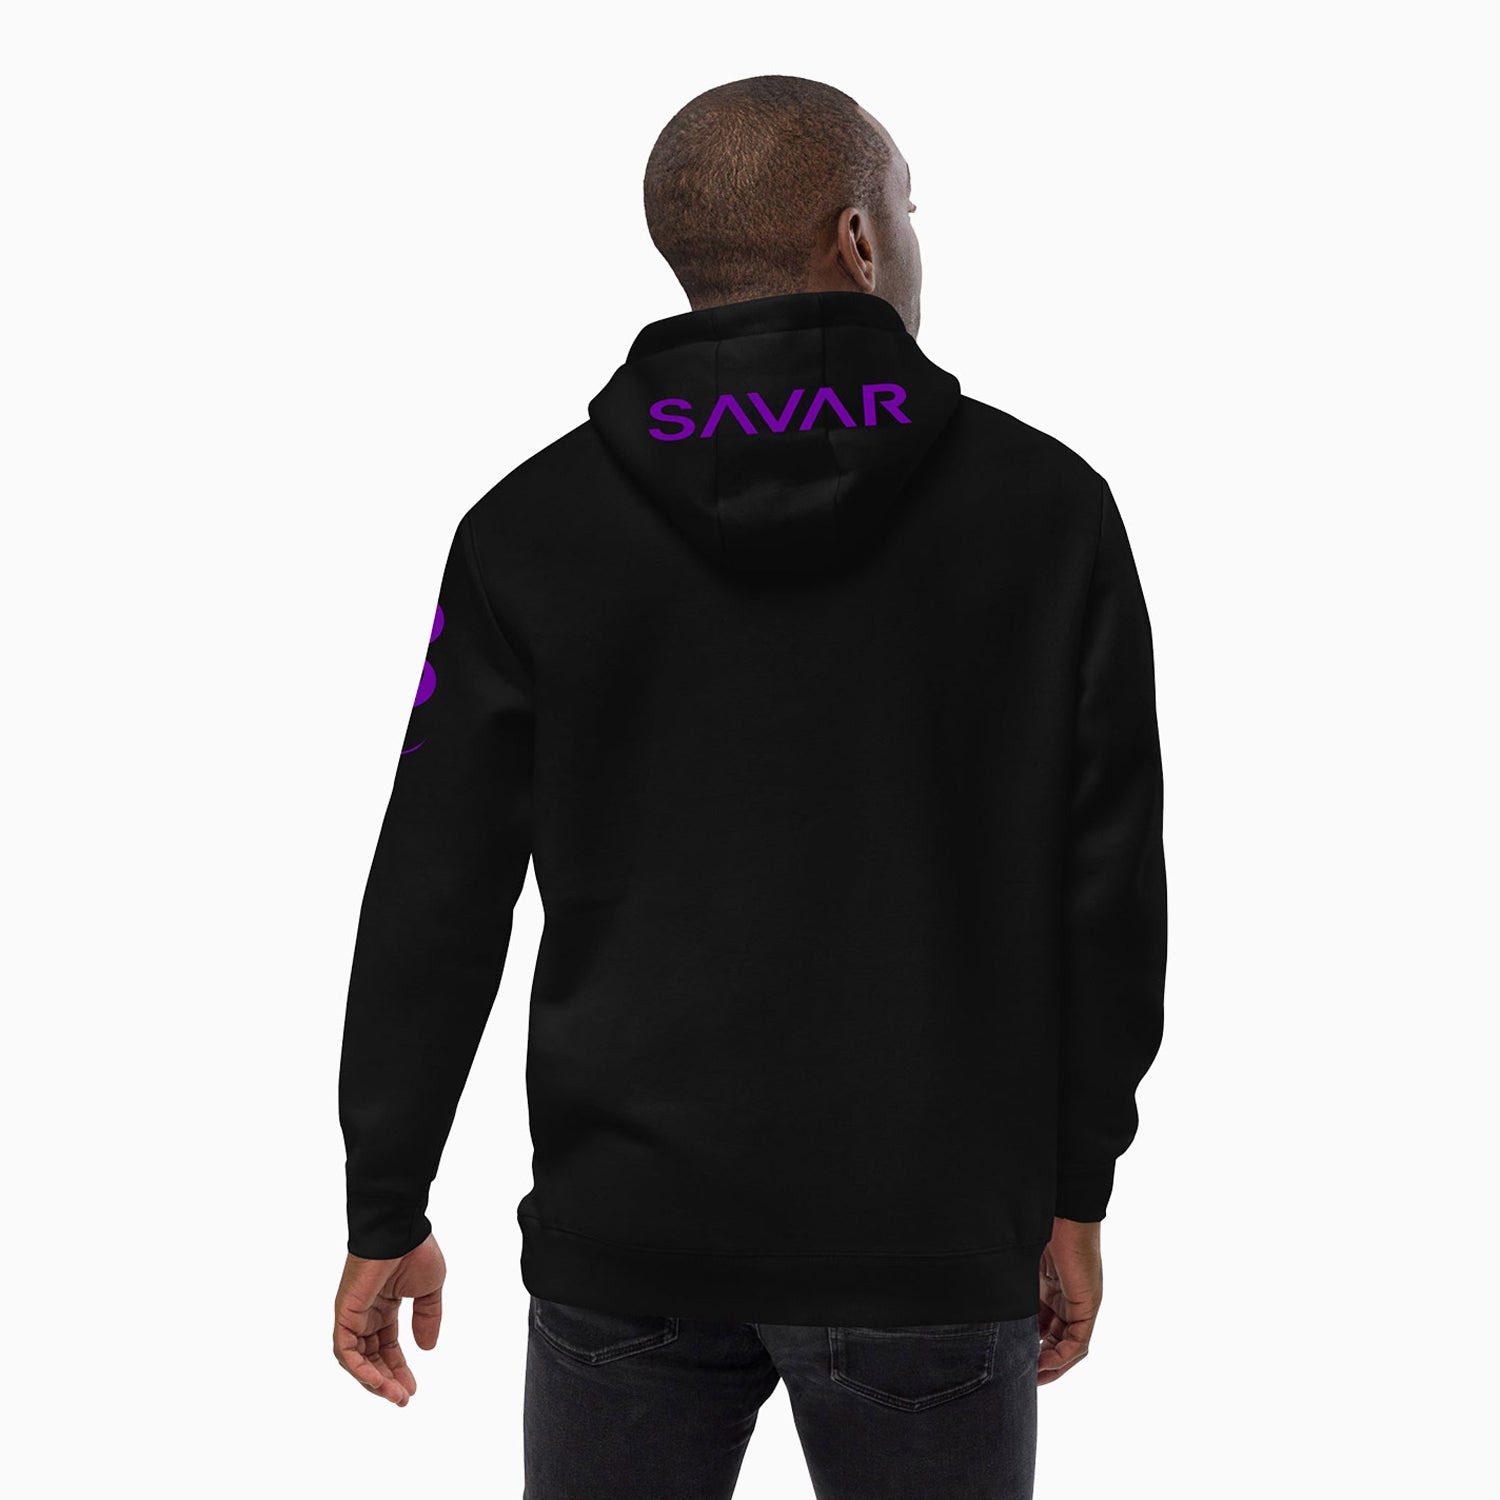 fluffy-design-printed-pull-over-black-hoodie-for-men-sh110-010